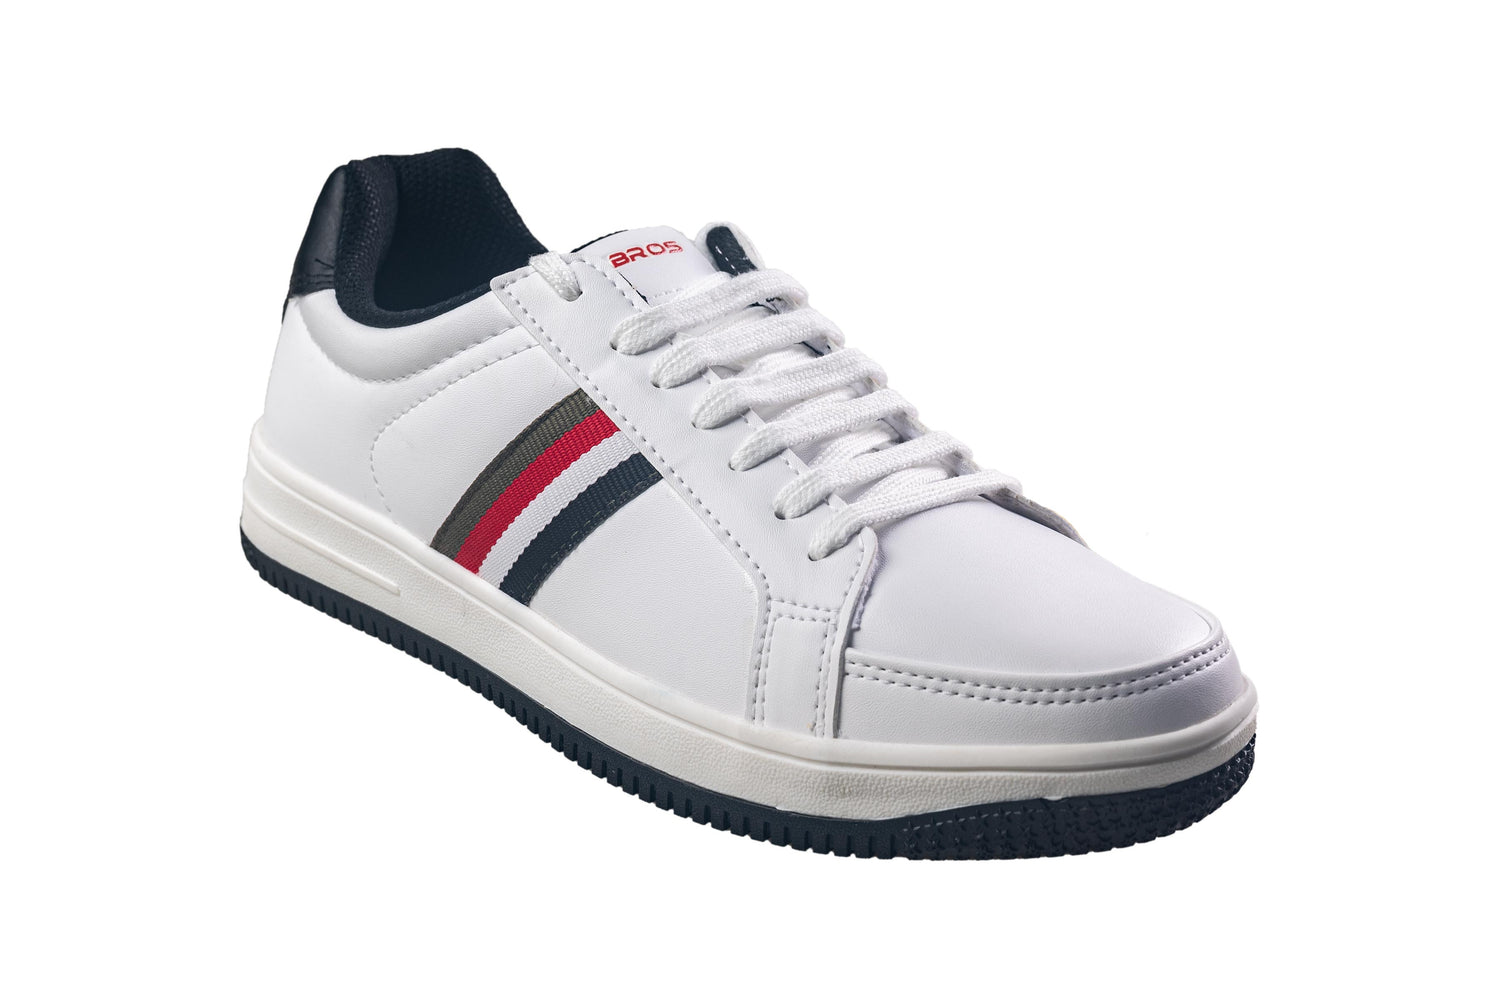 Abros Gents White / Black Sports Shoe